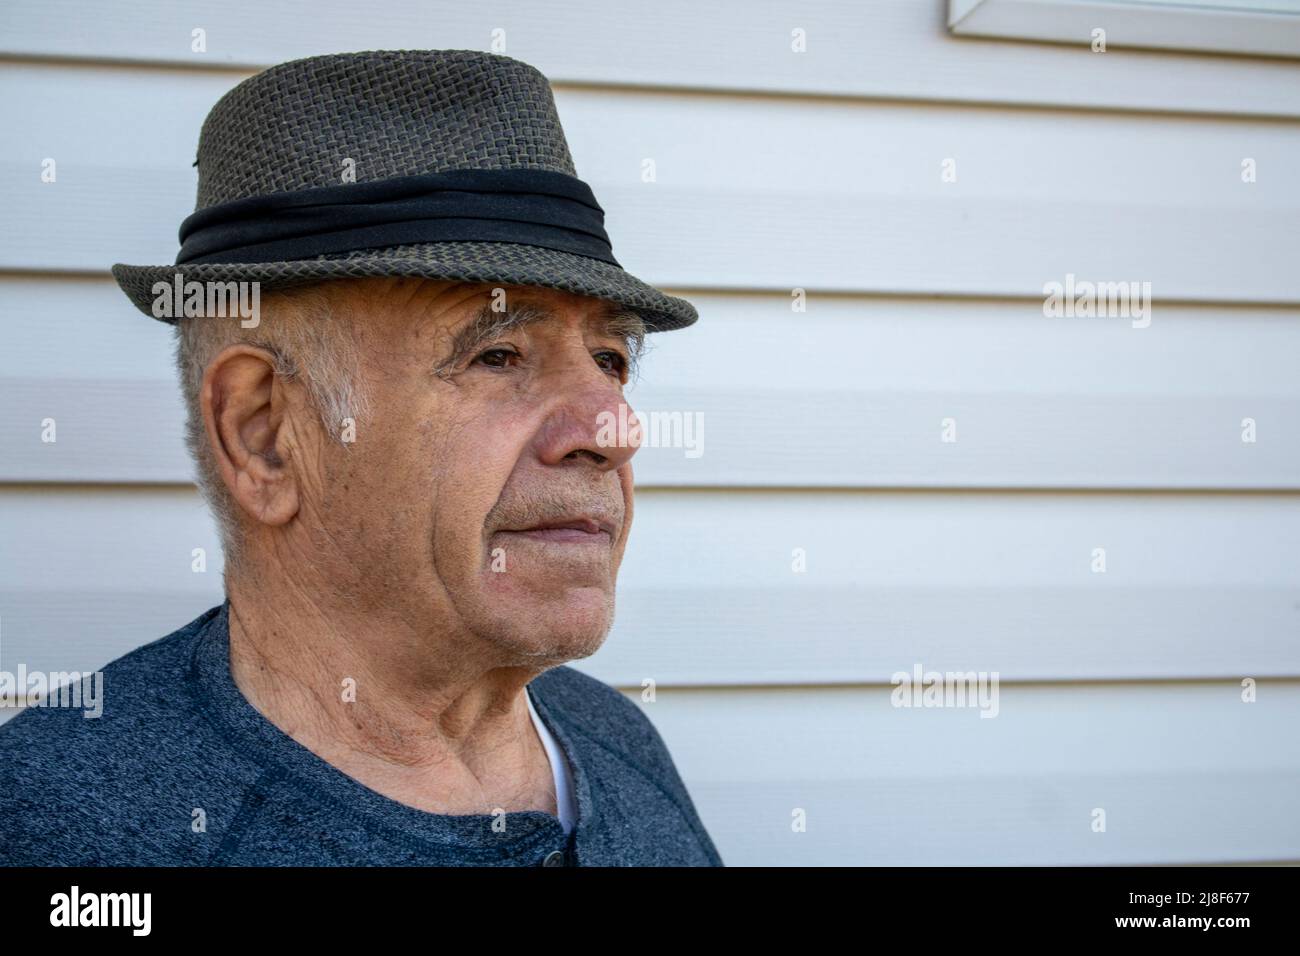 adulto mayor de sexo masculino caucásico con un sombrero fedora delante de una pared exterior blanca de la casa Foto de stock